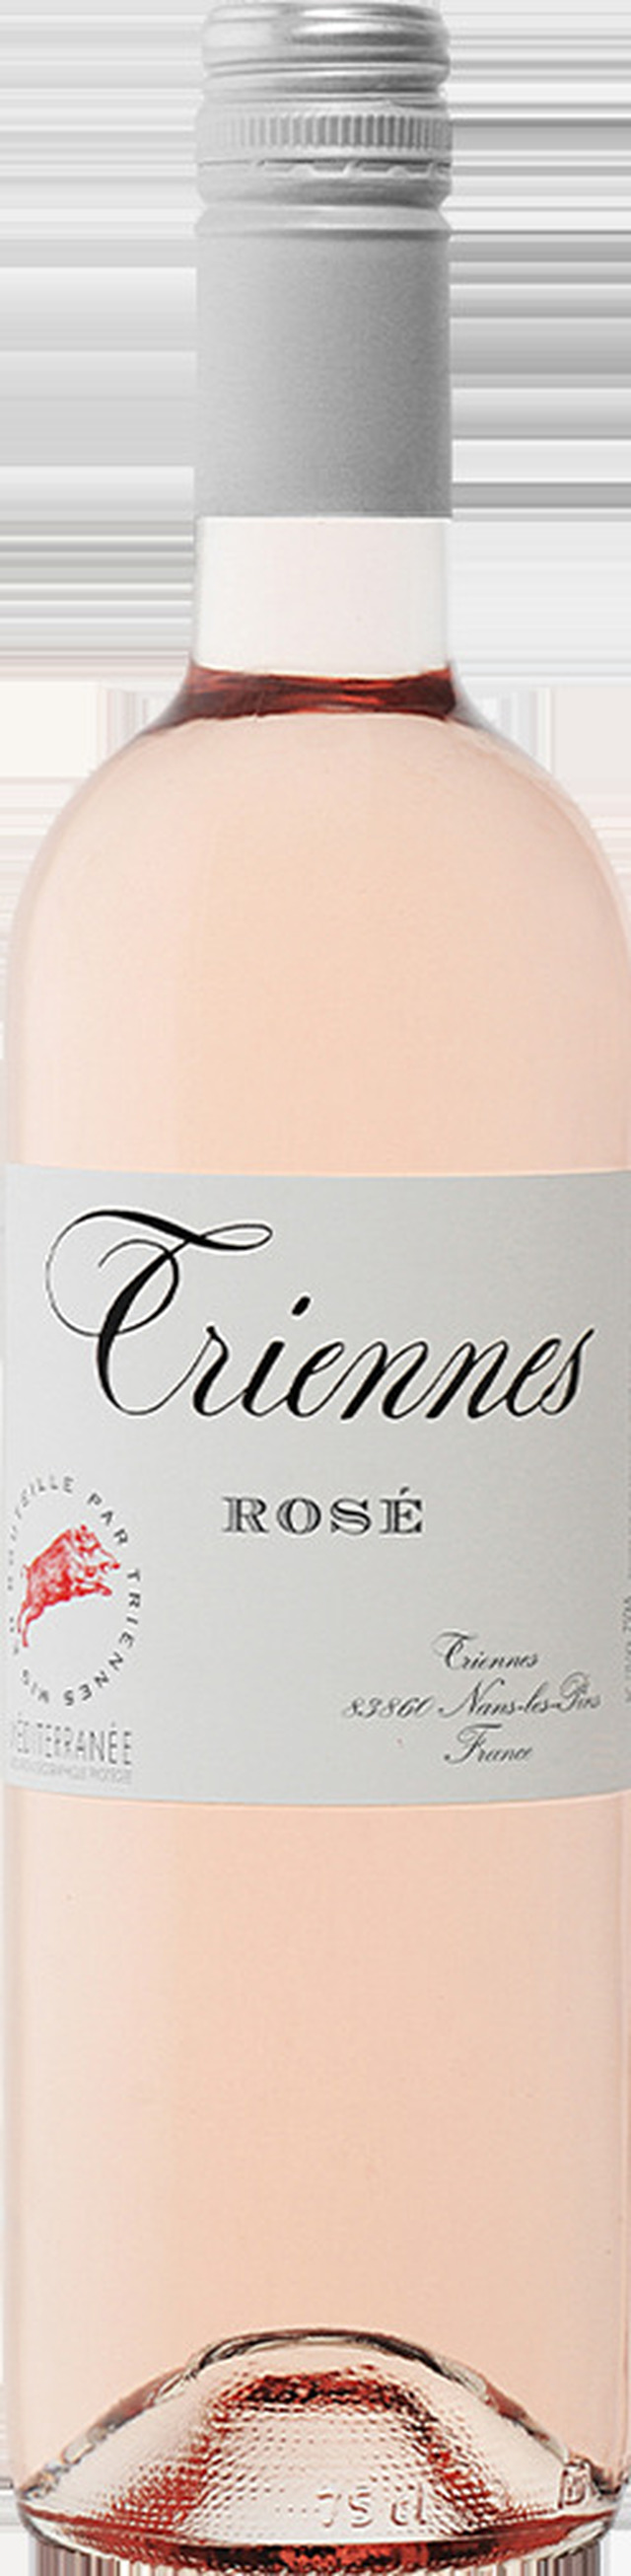 Triennes Rosé - Vinklubben